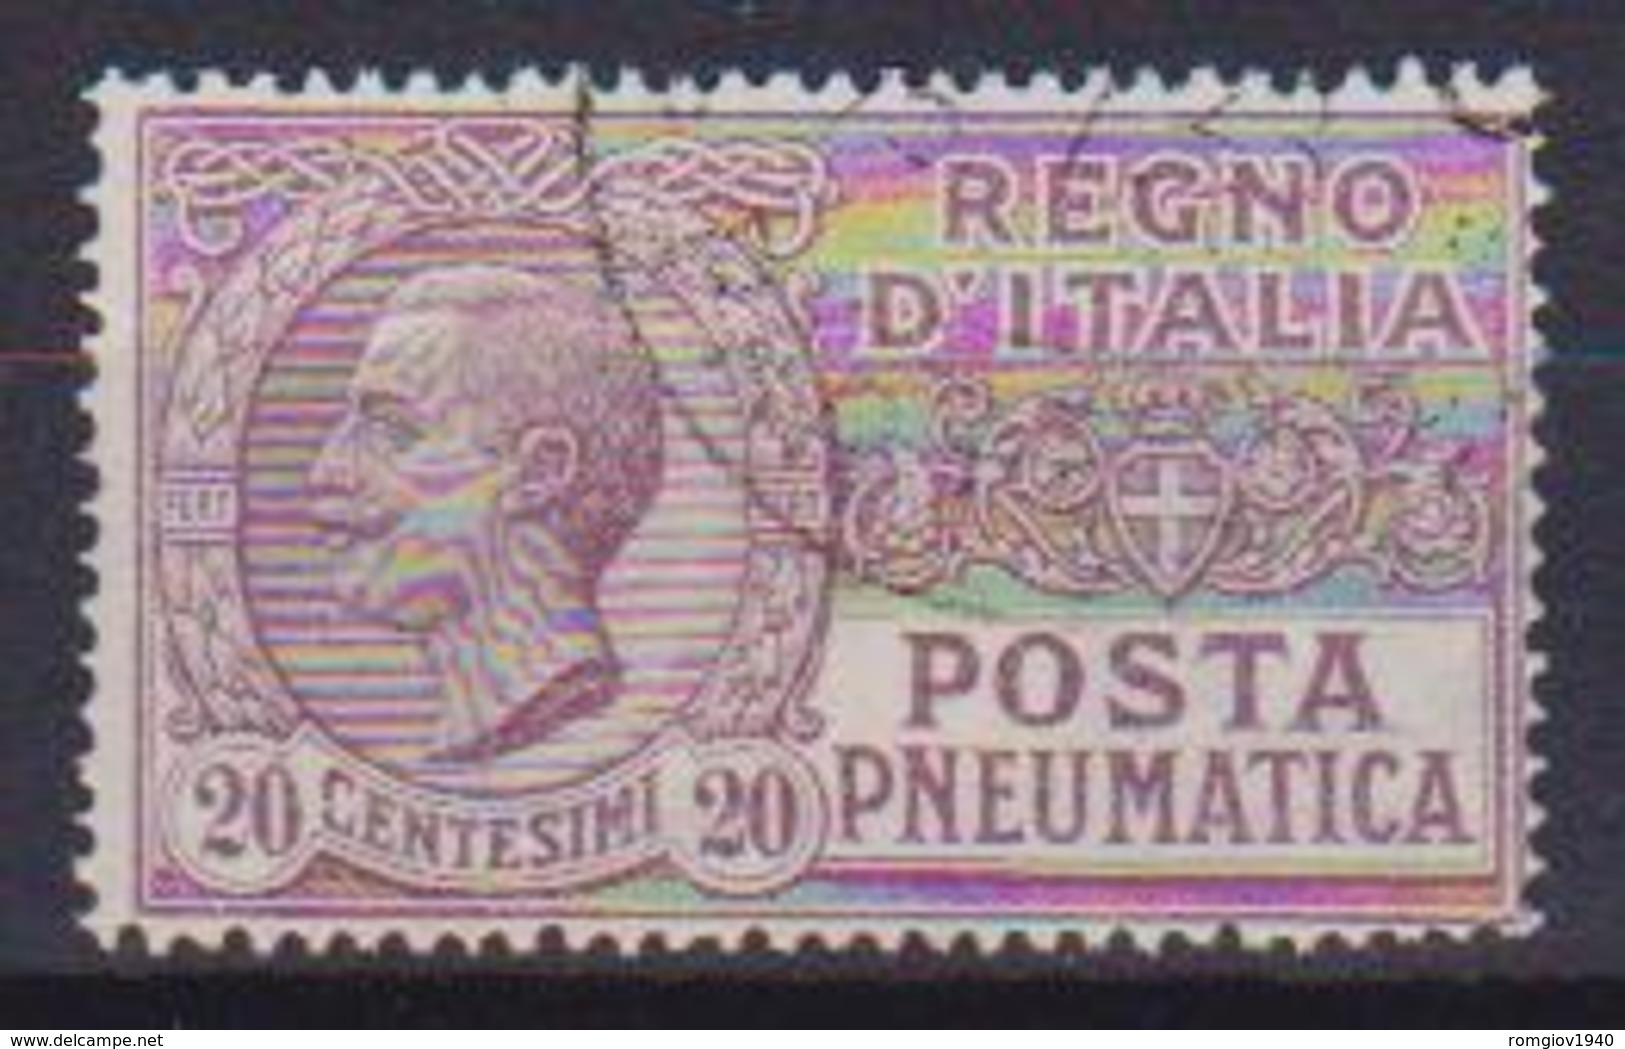 REGNO D'ITALIA POSTA PNEUMATICA 1925  TIPO DEL 1913-23 EFFIGE DI V.EMANUELE III SASS. 8 USATO VF - Pneumatic Mail